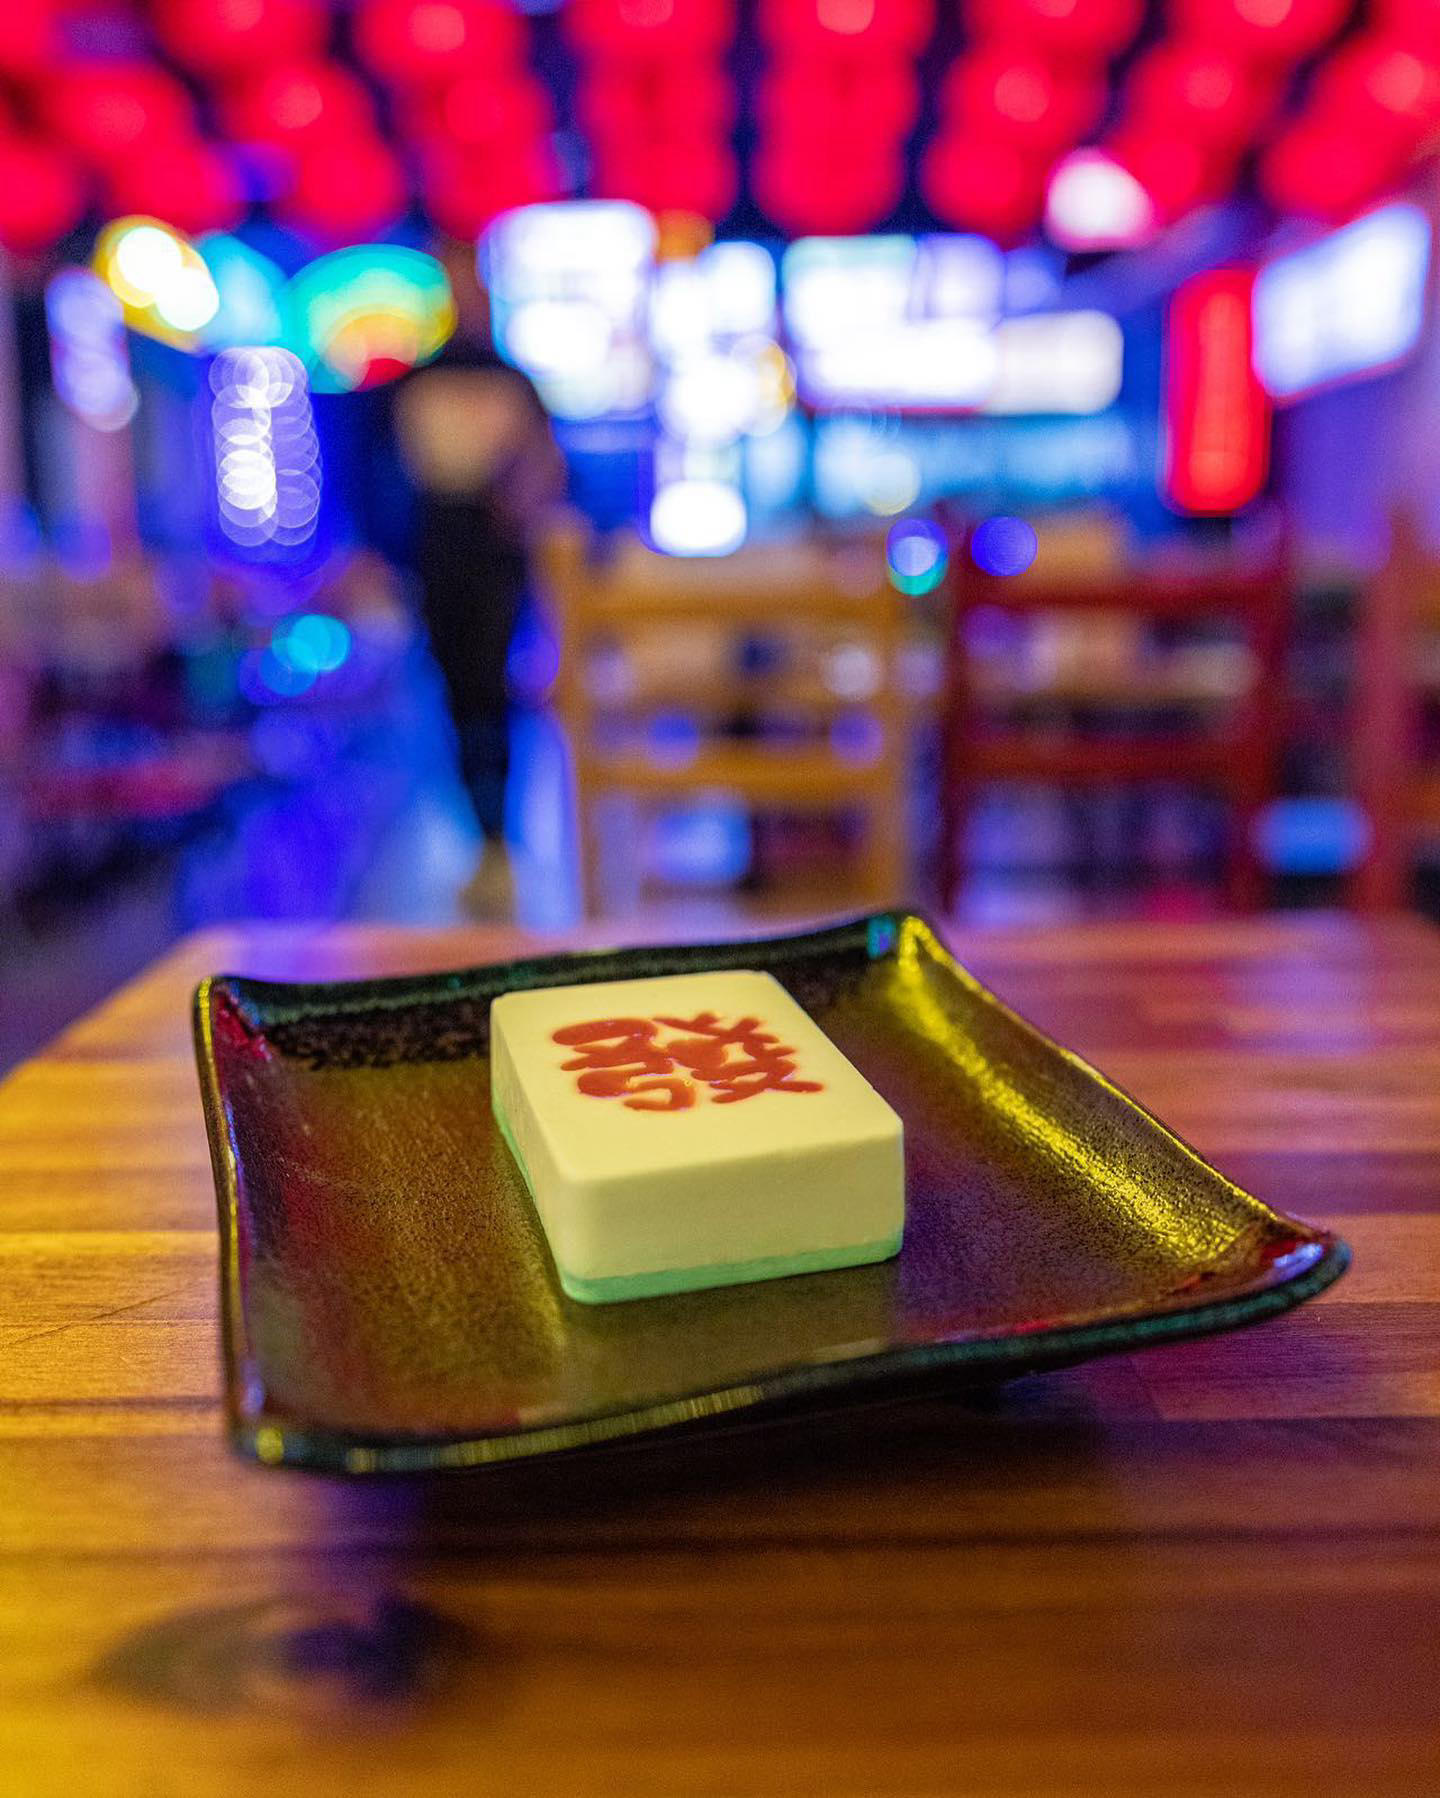 Nous avons créé un dessert unique inspiré du jeu de mahjong